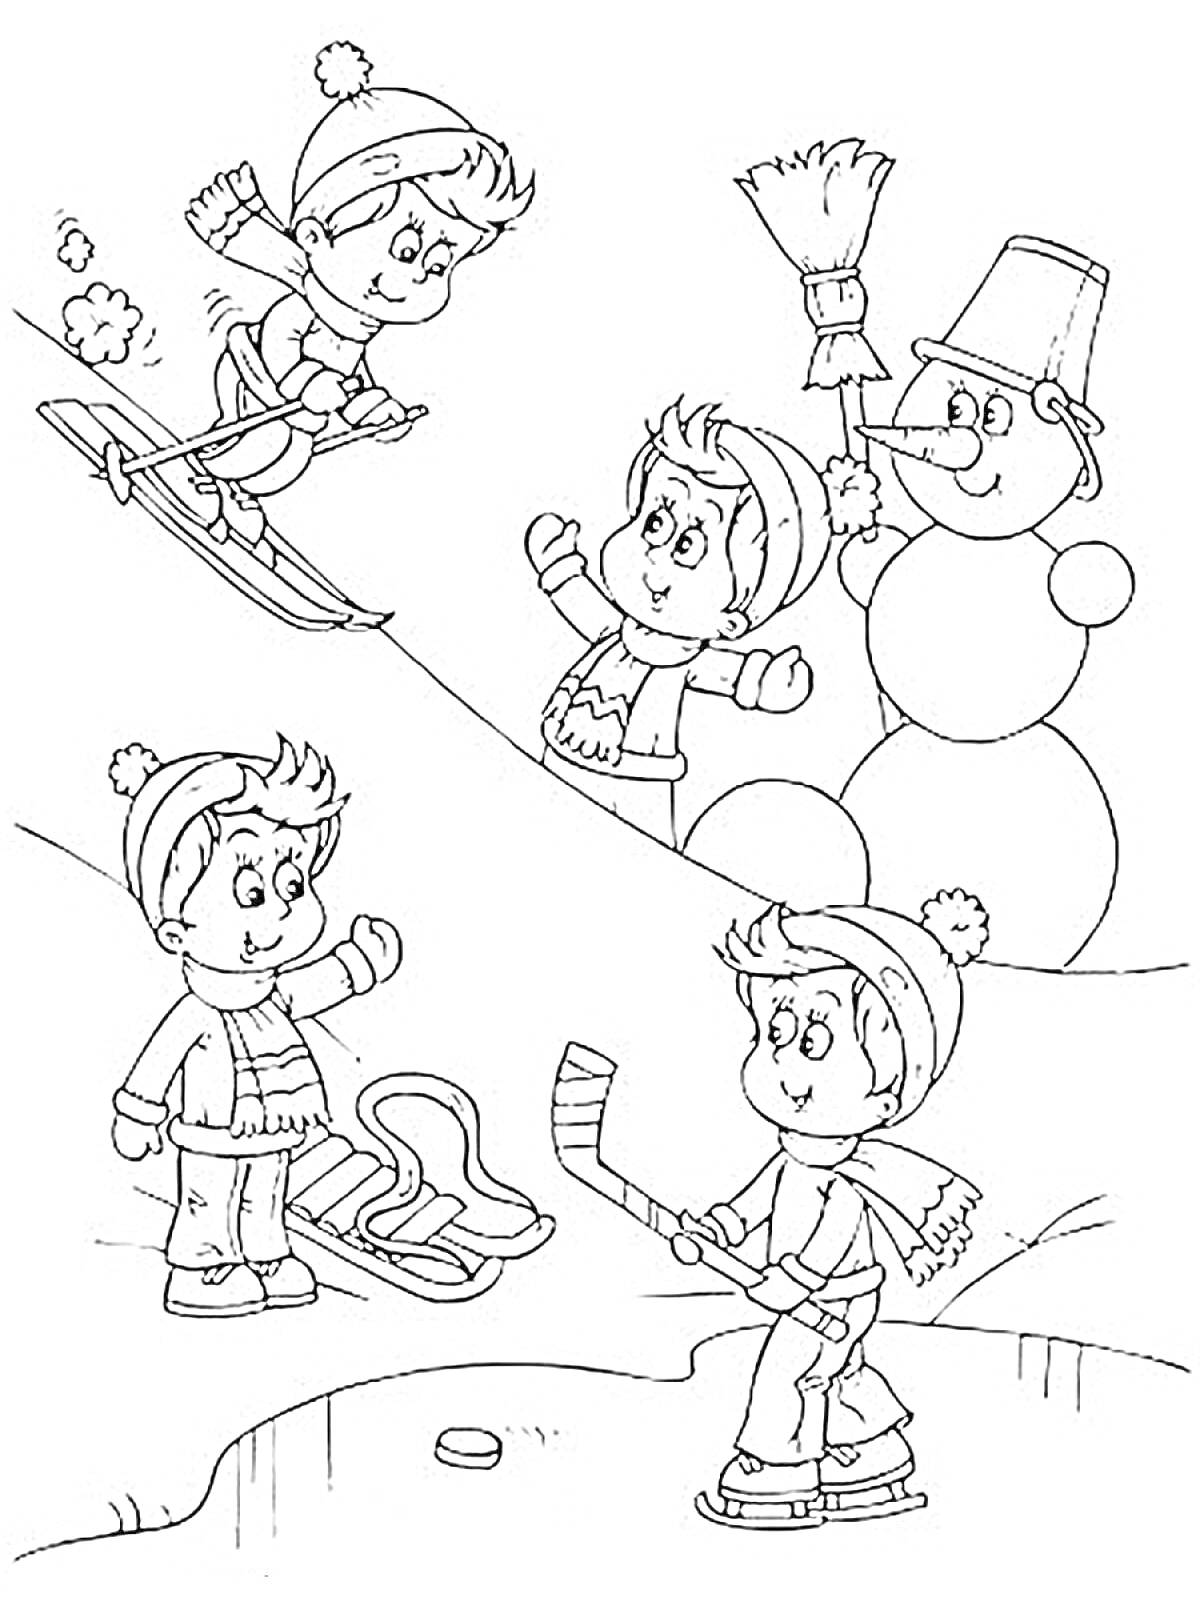 Раскраска Детские зимние забавы - катание на лыжах, лепка снеговика, катание на санках, игра в хоккей